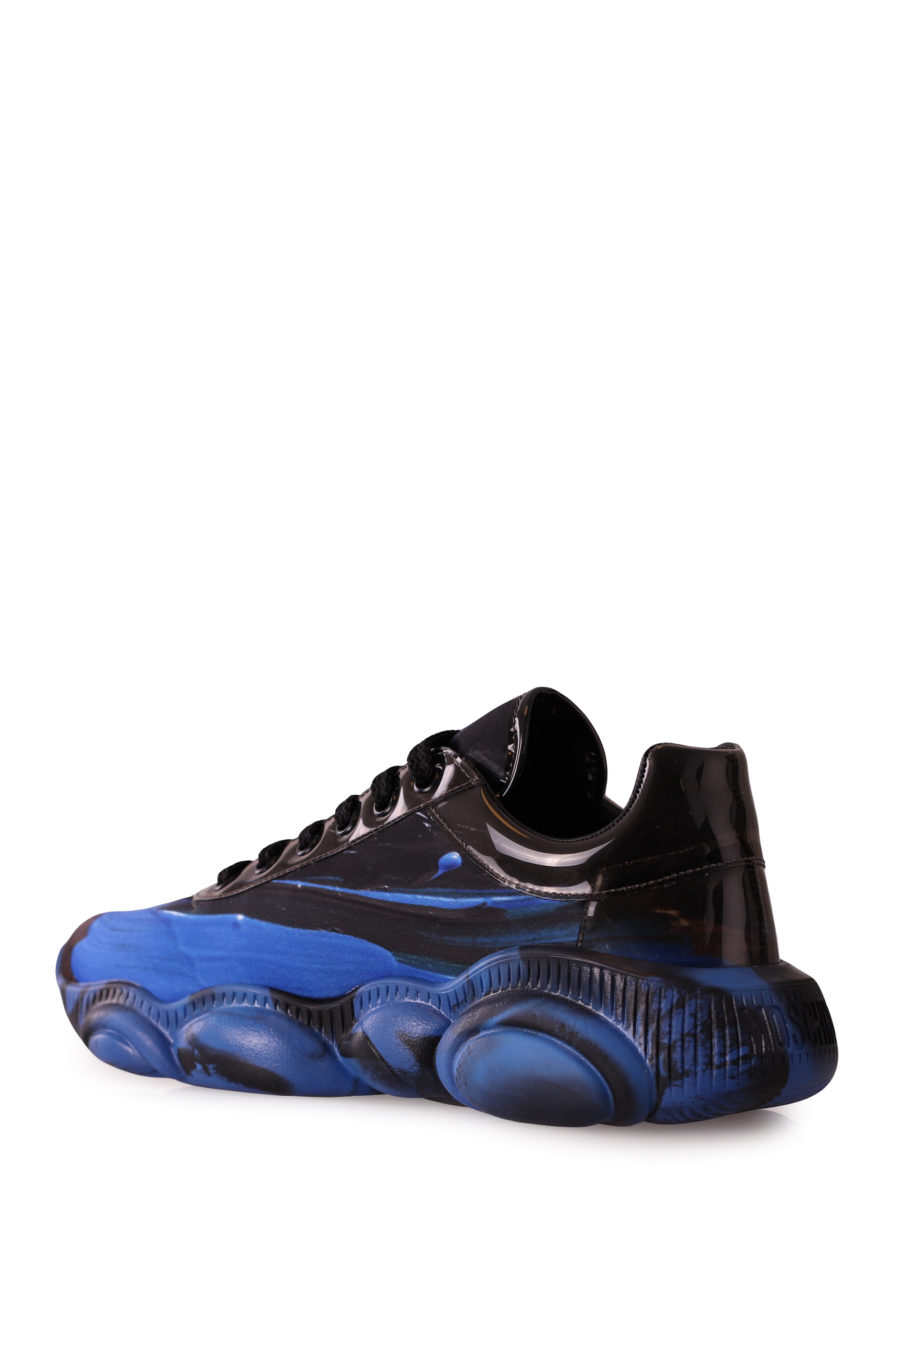 Zapatillas negras con efecto pintura azul - c3f078ae215aaade4749778369312384a2a999ab